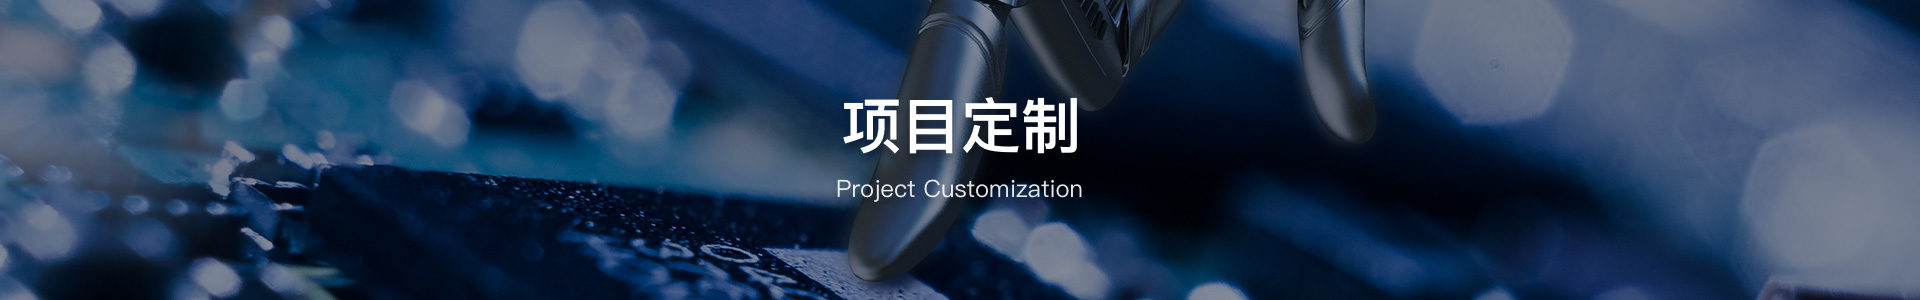 Project Customization